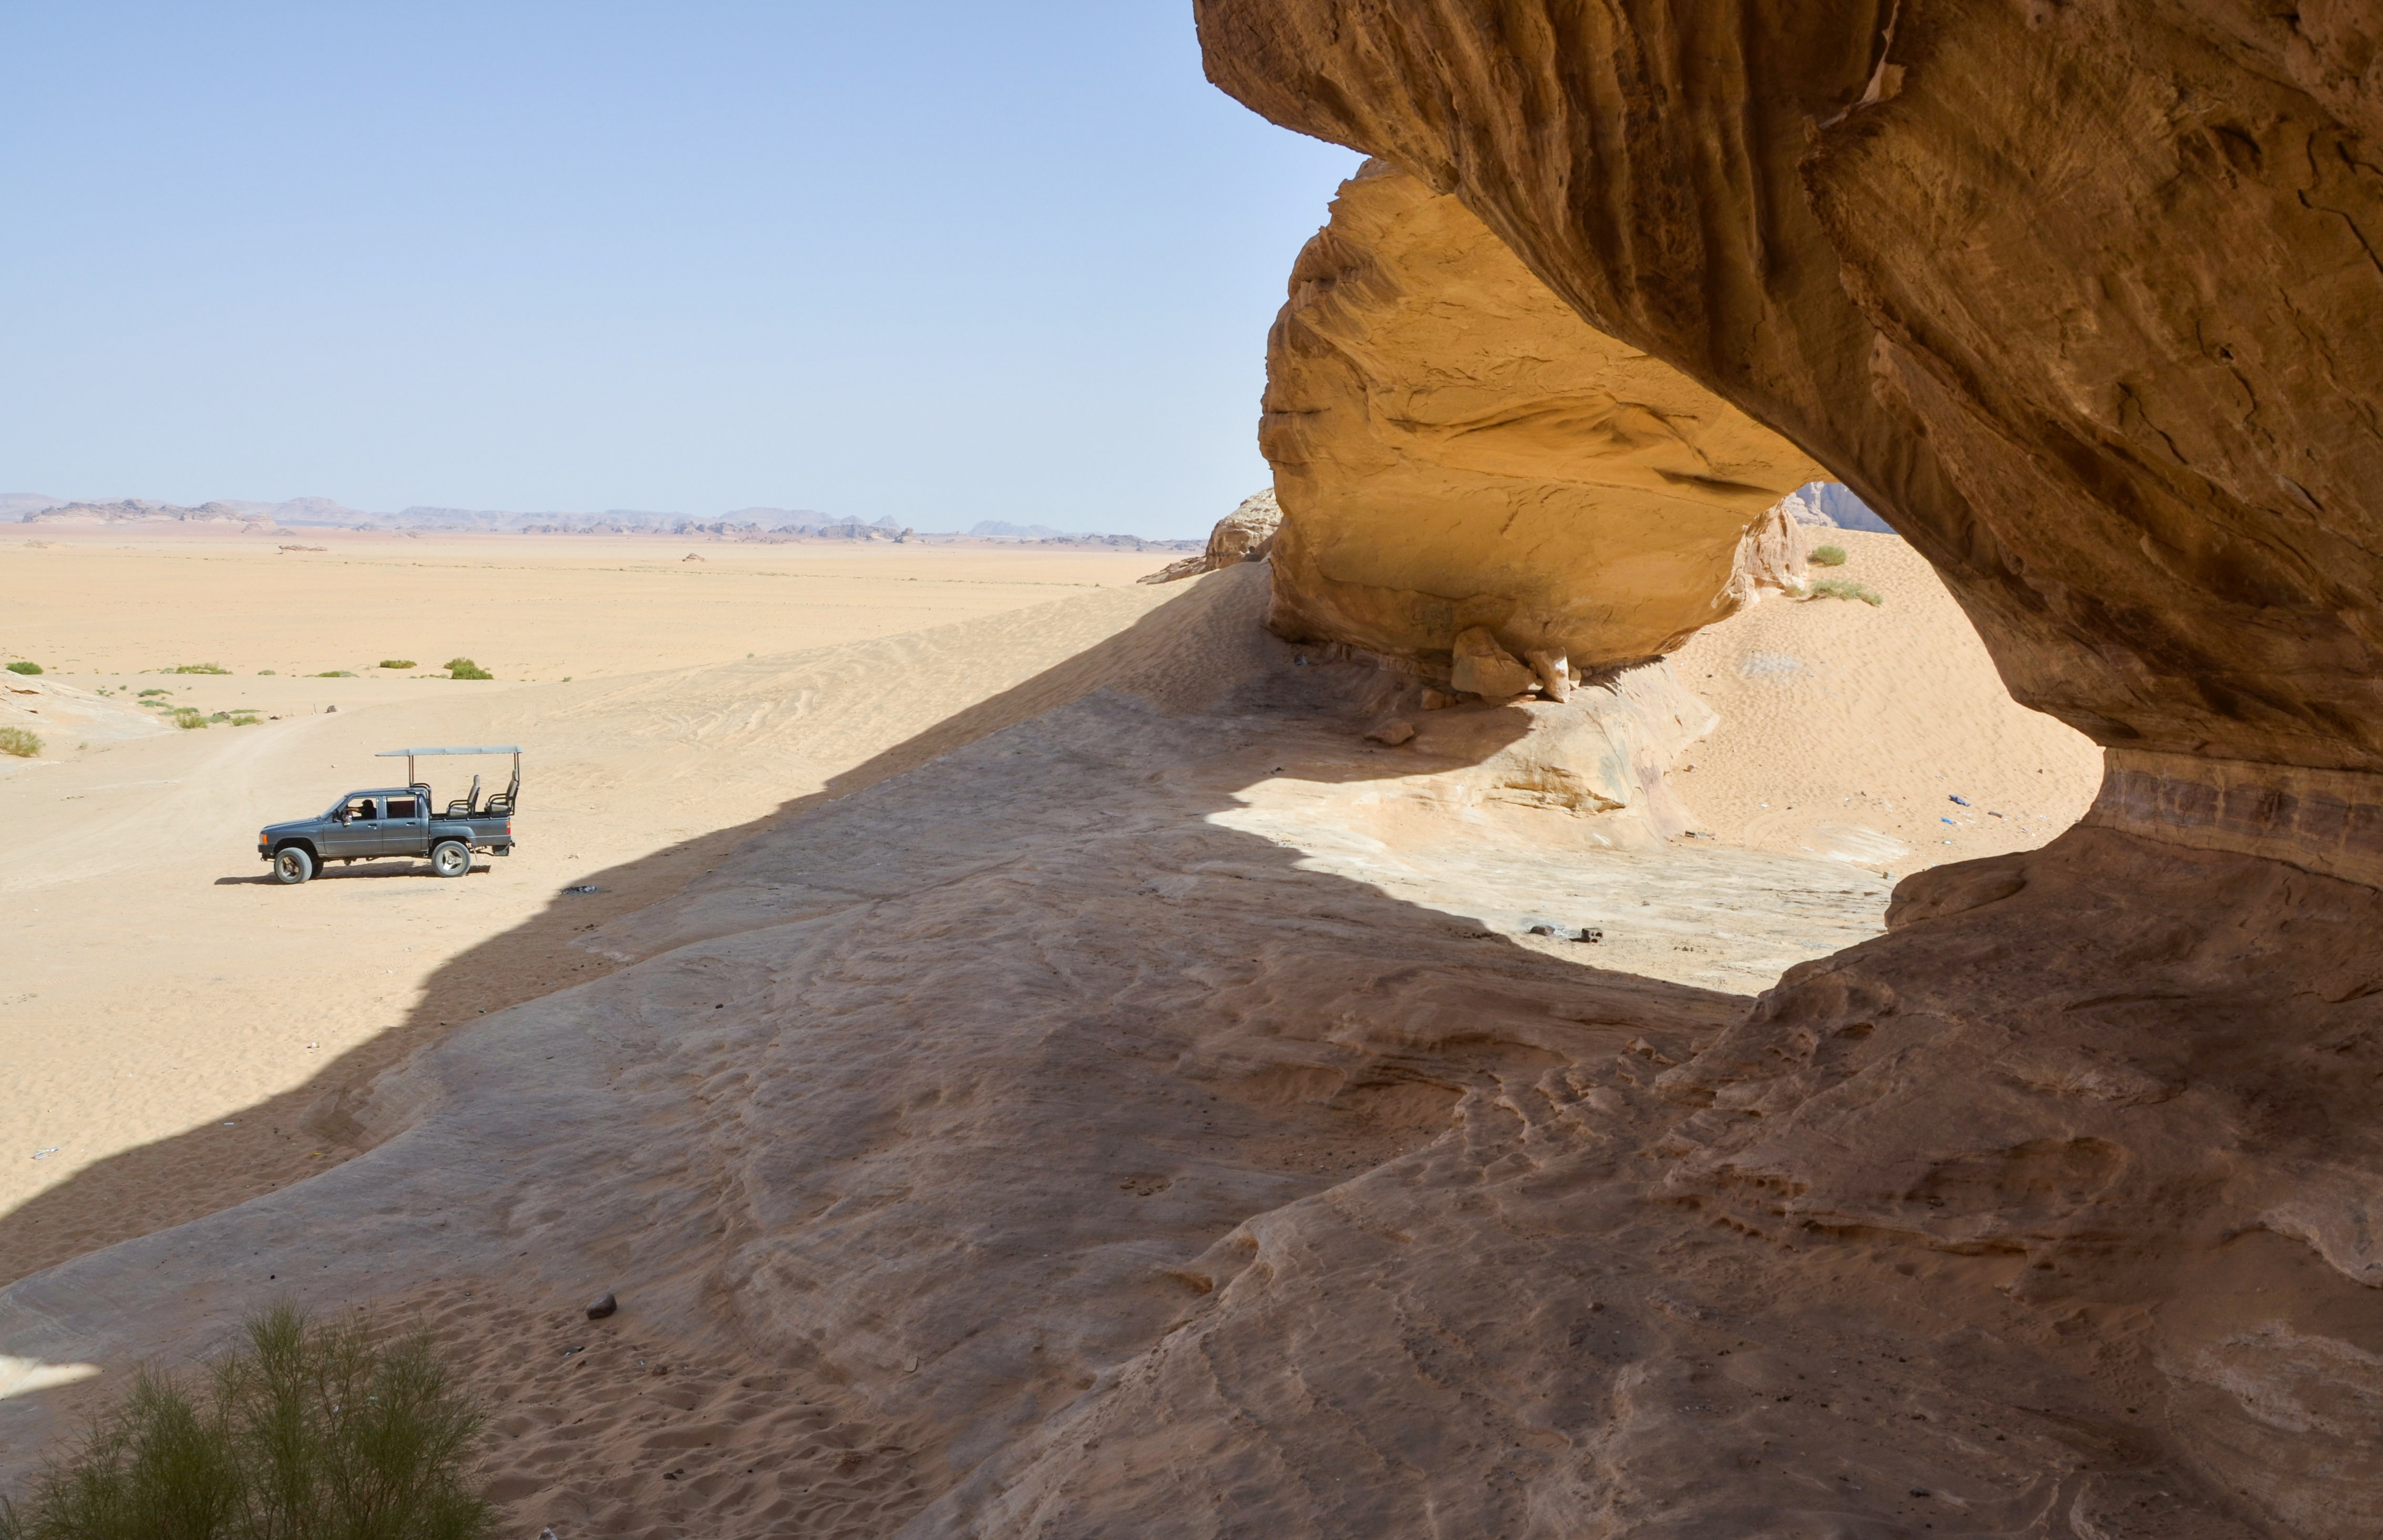  A vehicle is seen in the desert in Wadi Rum, Jordan July 3, 2021. Picture taken July 3, 2021. REUTERS/Muath Freij